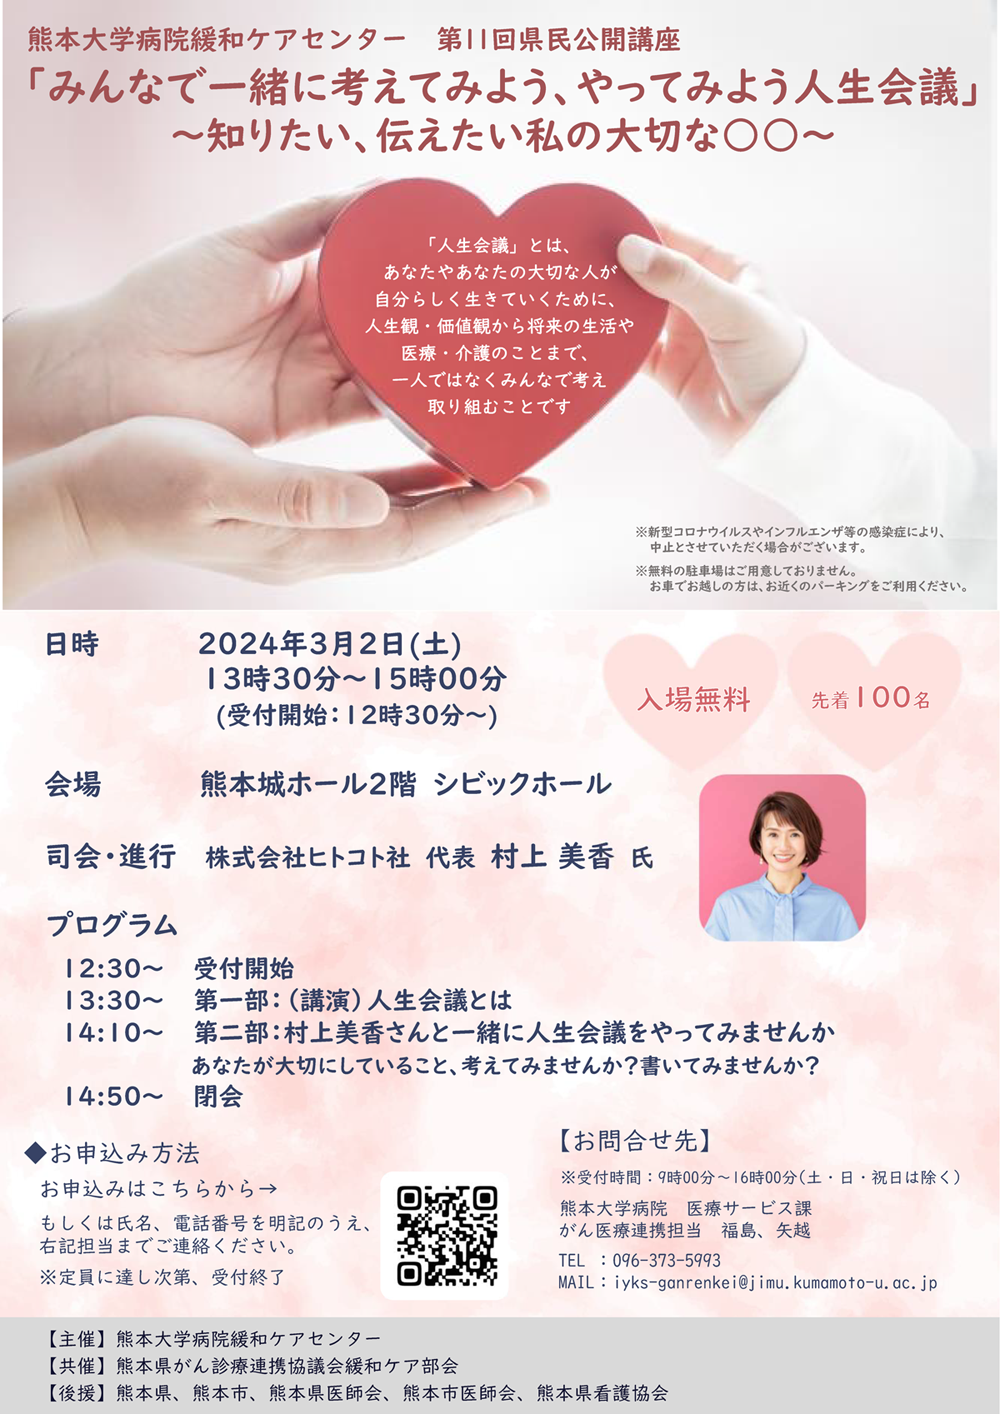 熊本大学病院緩和ケアセンター 第11回県民公開講座チラシ